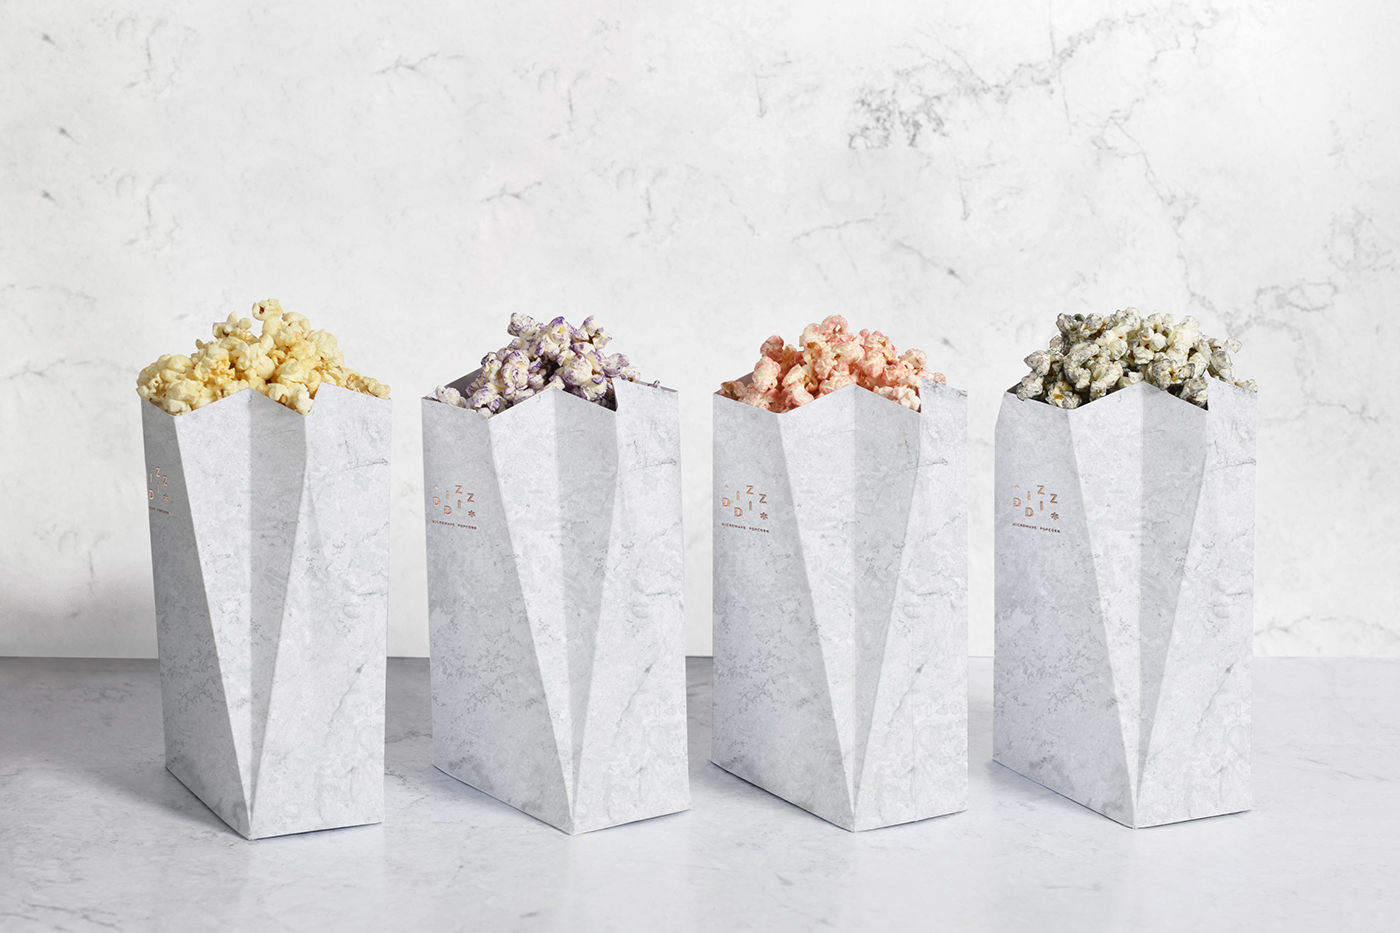 popcorn gourmet lujo gold dorado Marble metallic Food Packaging elegante elegance marmol Palomitas cool premium